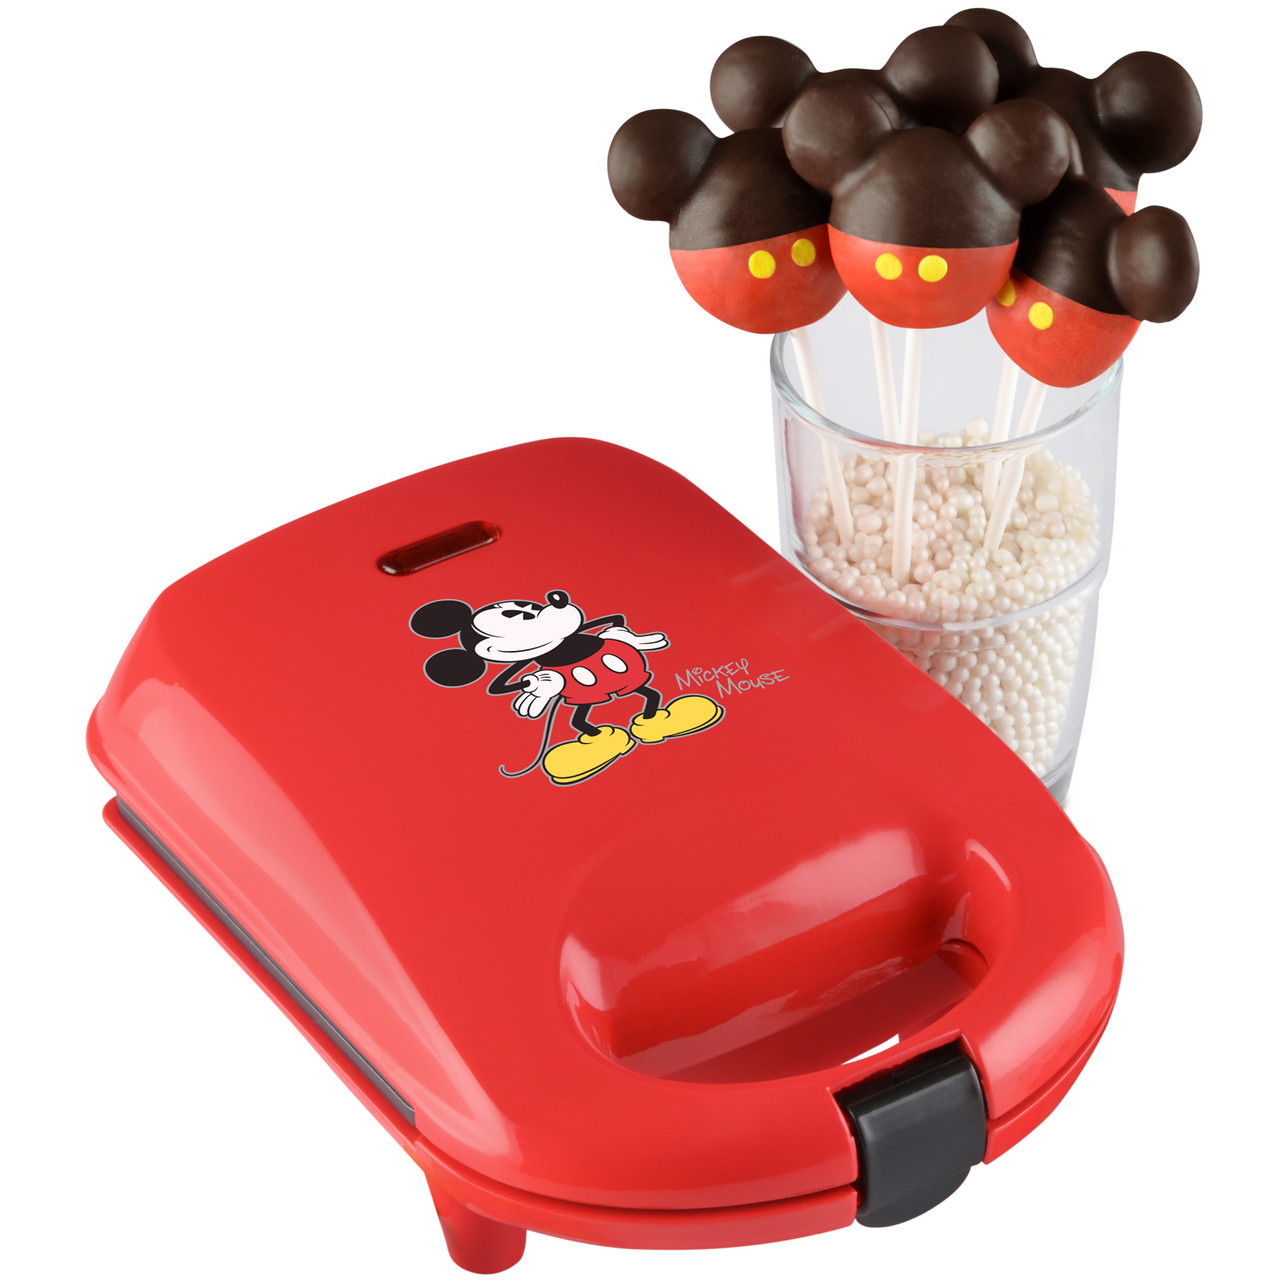 Conventie Signaal Tot ziens Mickey Mouse Cake Pop Maker